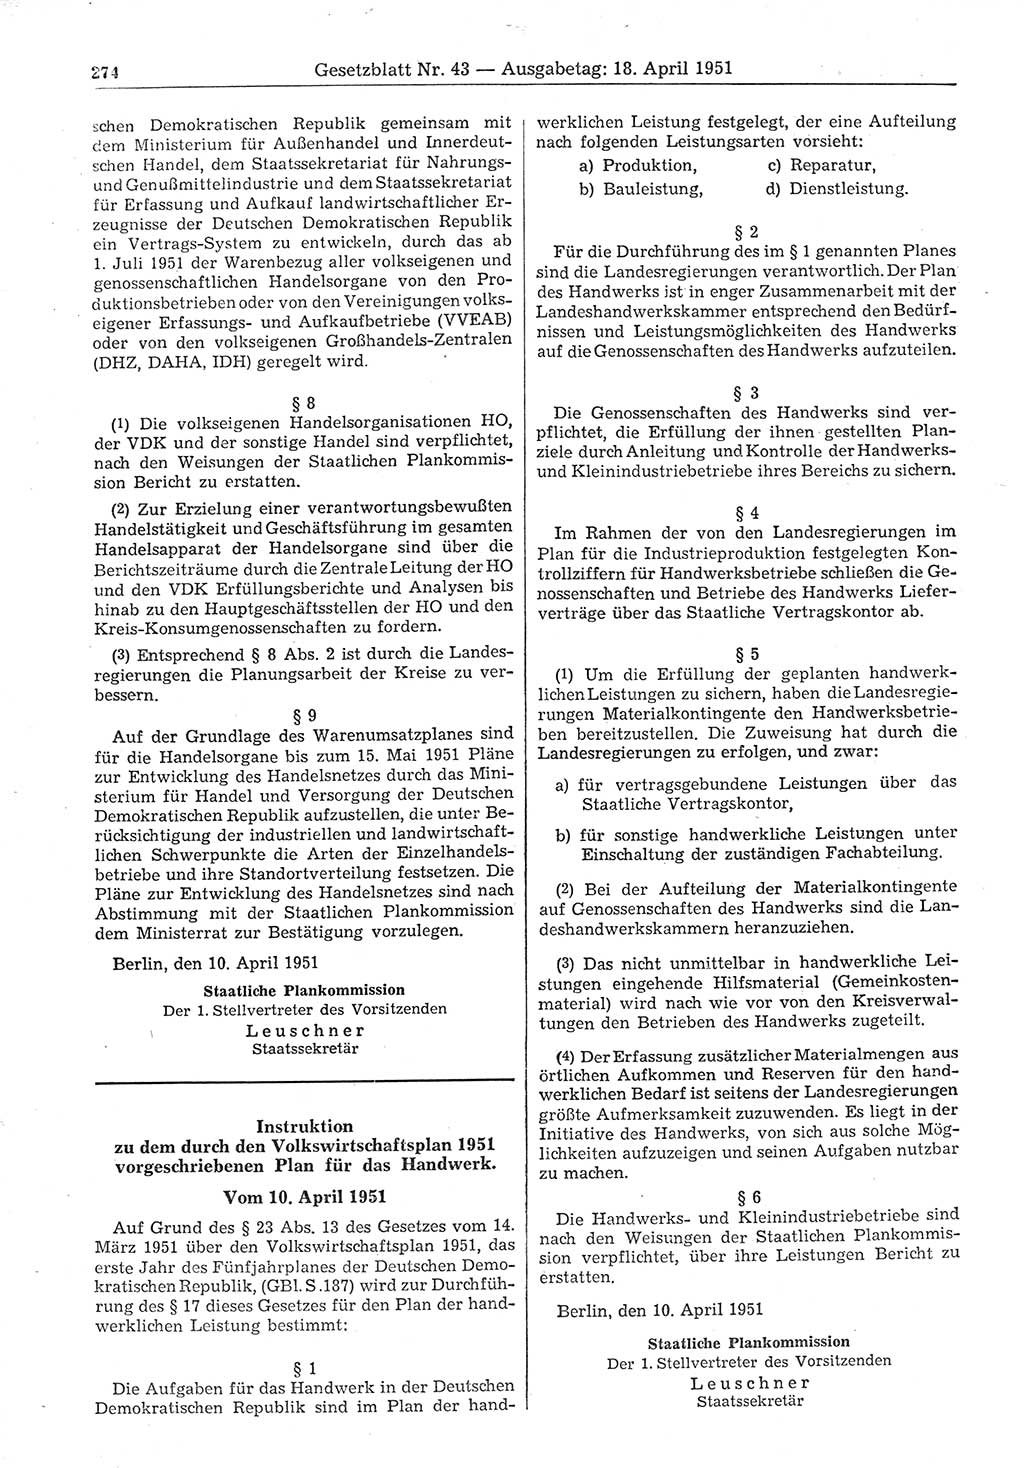 Gesetzblatt (GBl.) der Deutschen Demokratischen Republik (DDR) 1951, Seite 274 (GBl. DDR 1951, S. 274)